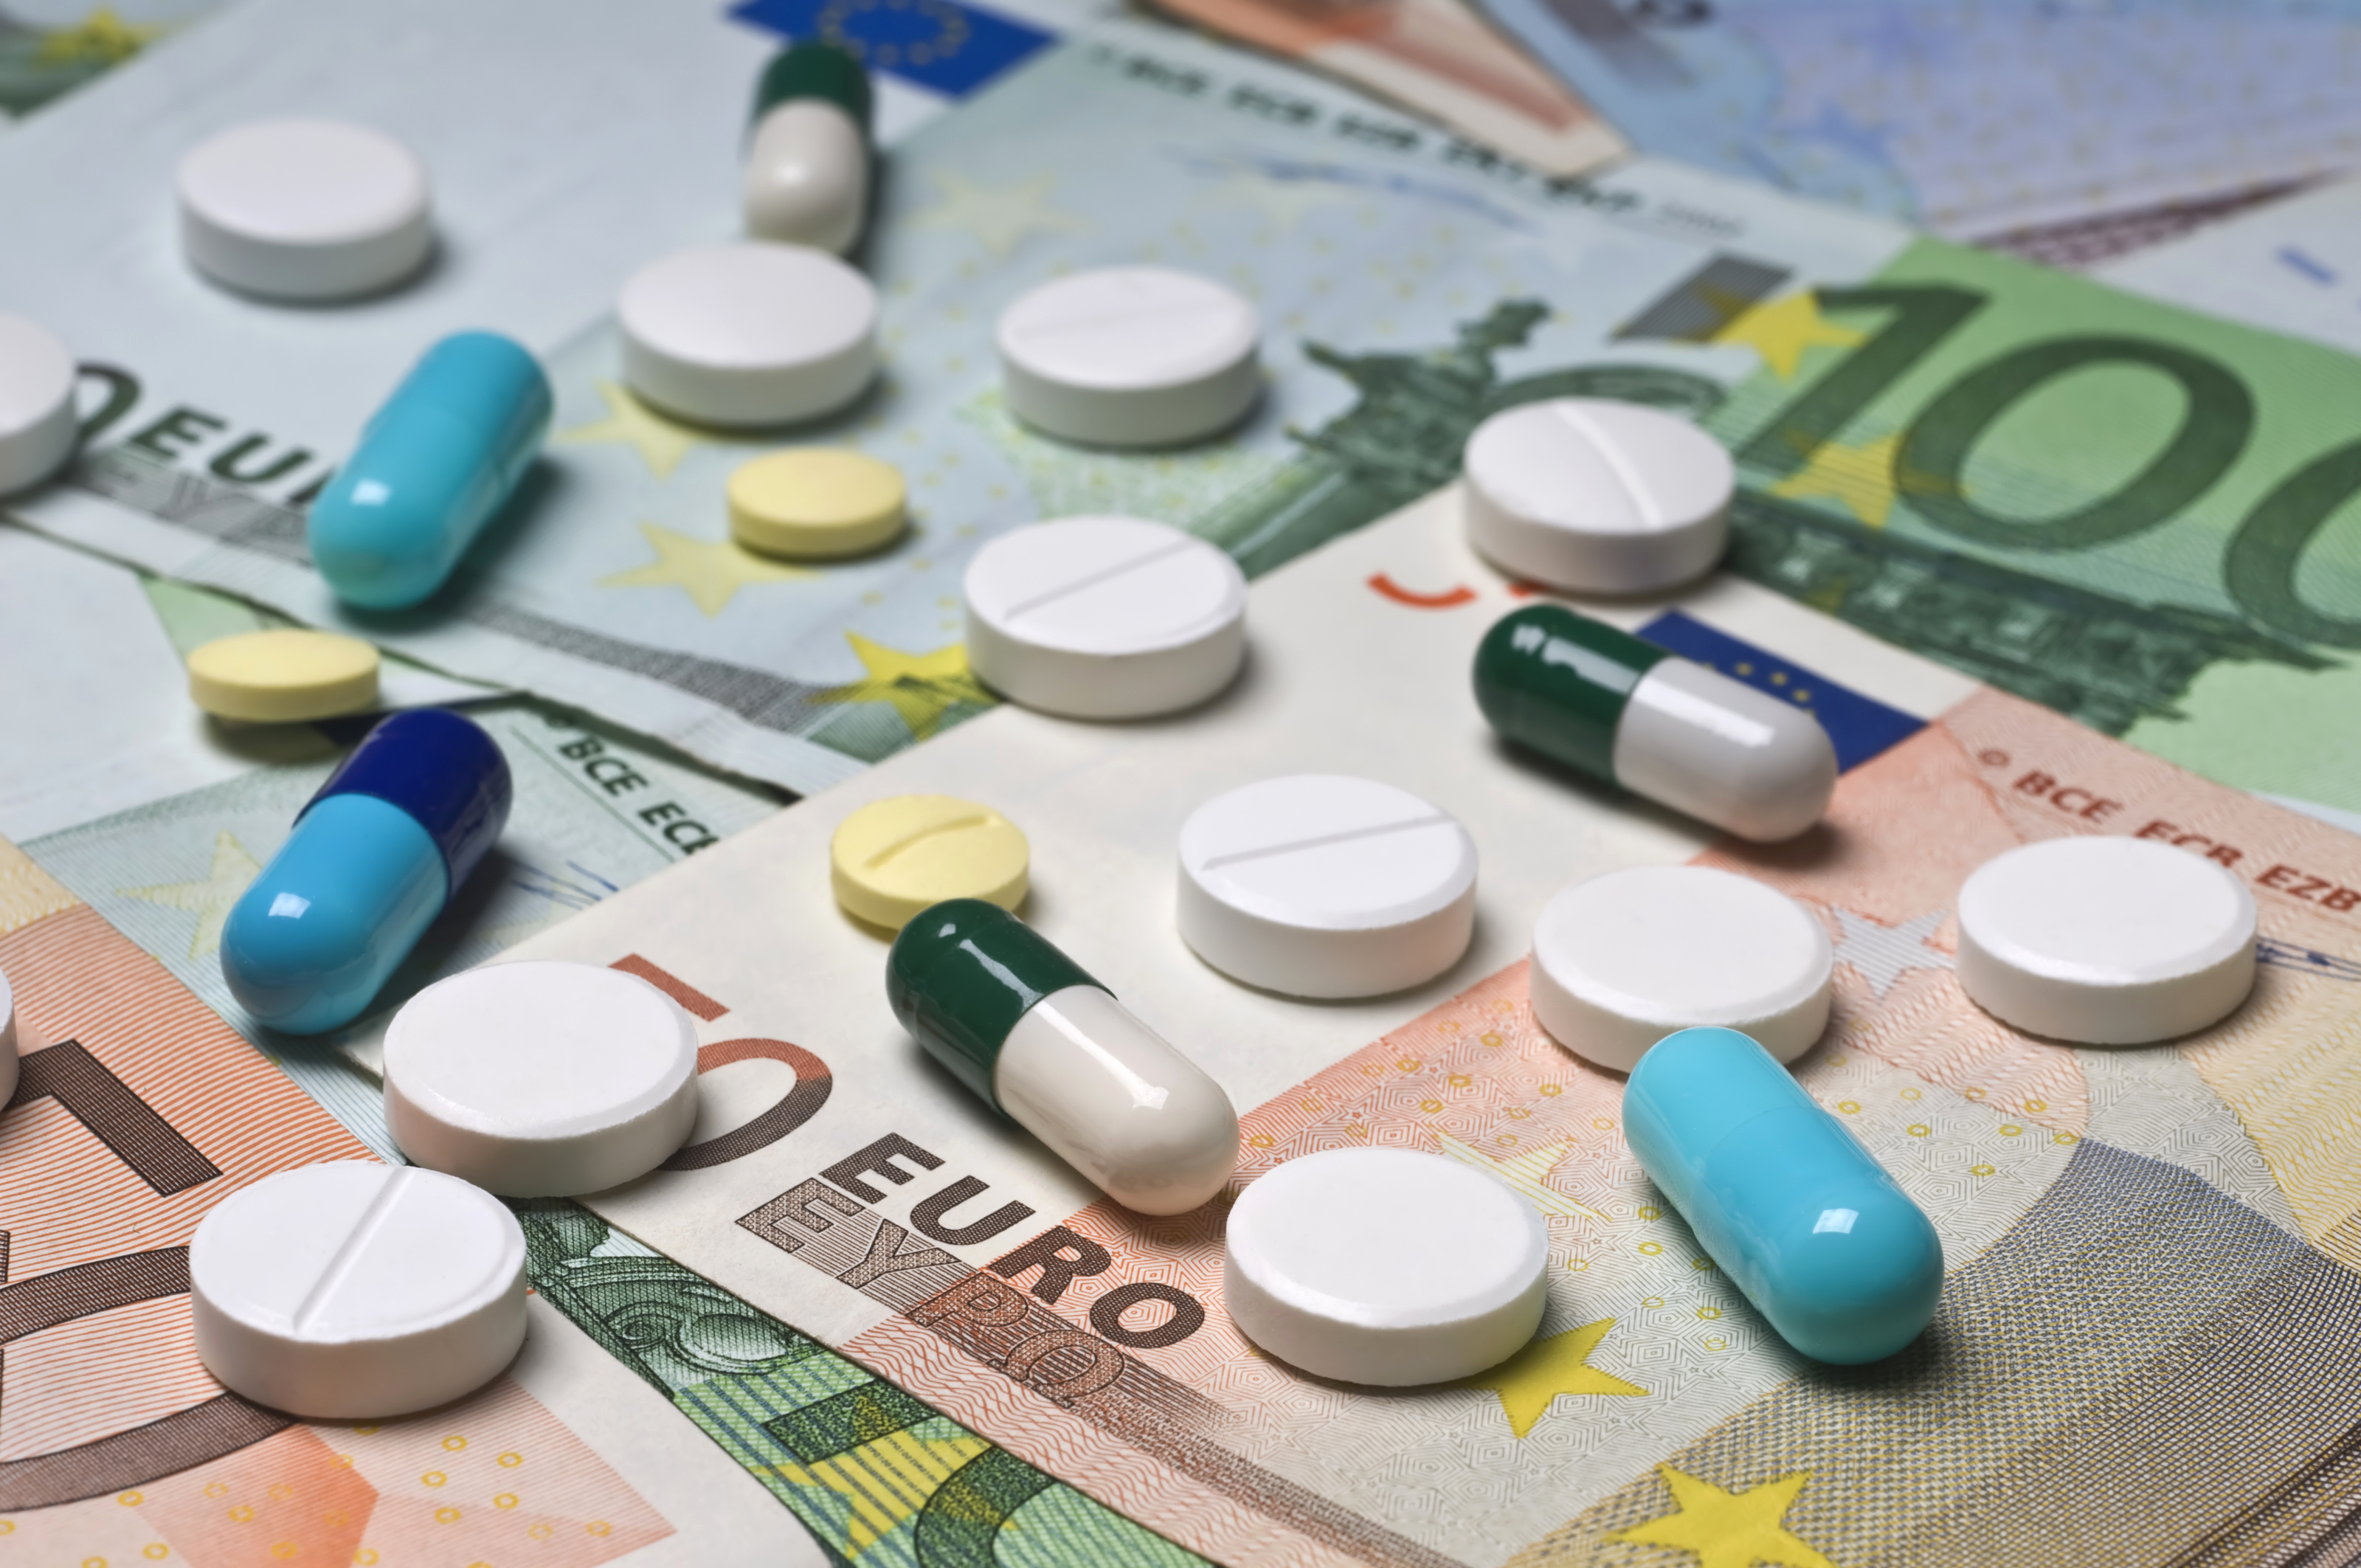 Pills and eurobills